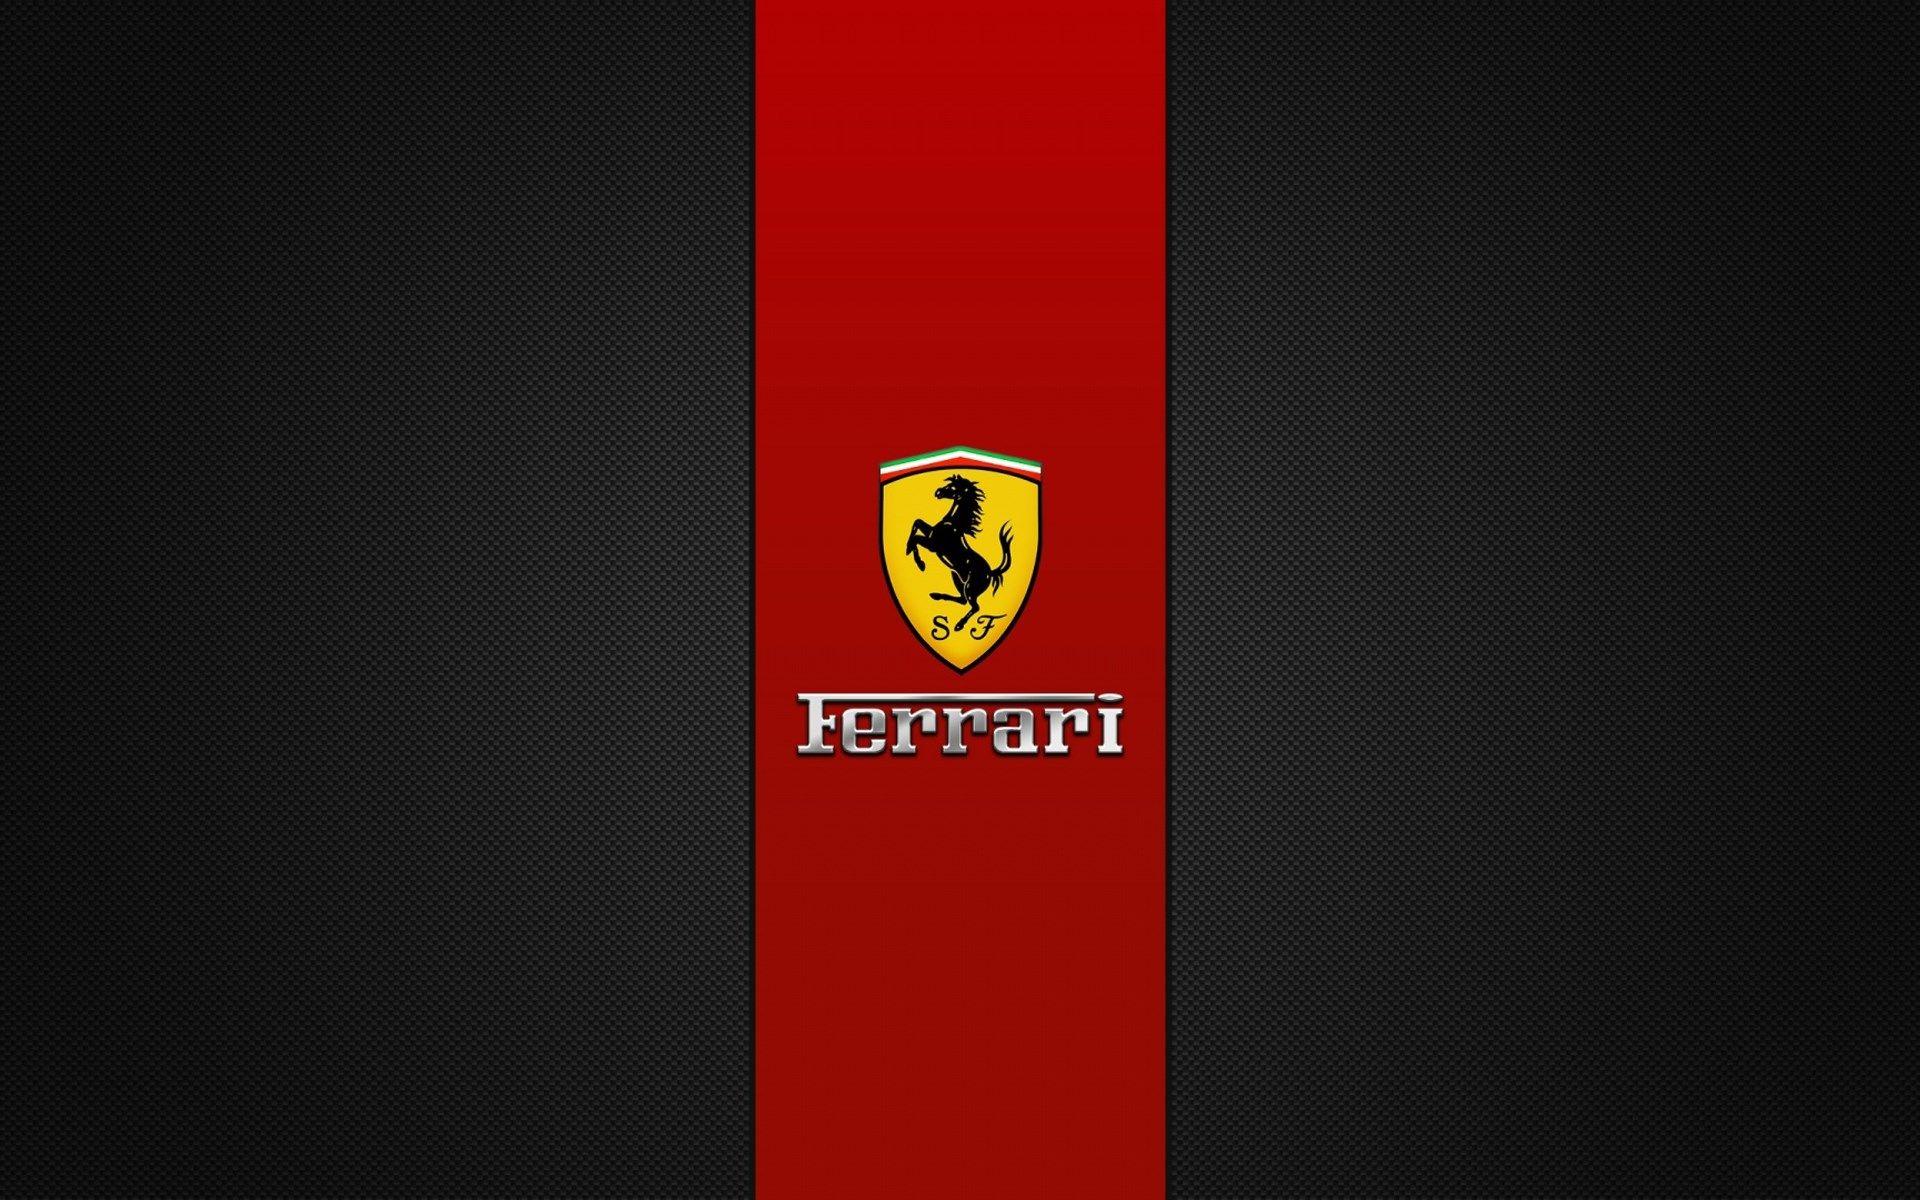 ferrari logo wallpaper HD. sharovarka. Ferrari, Logos